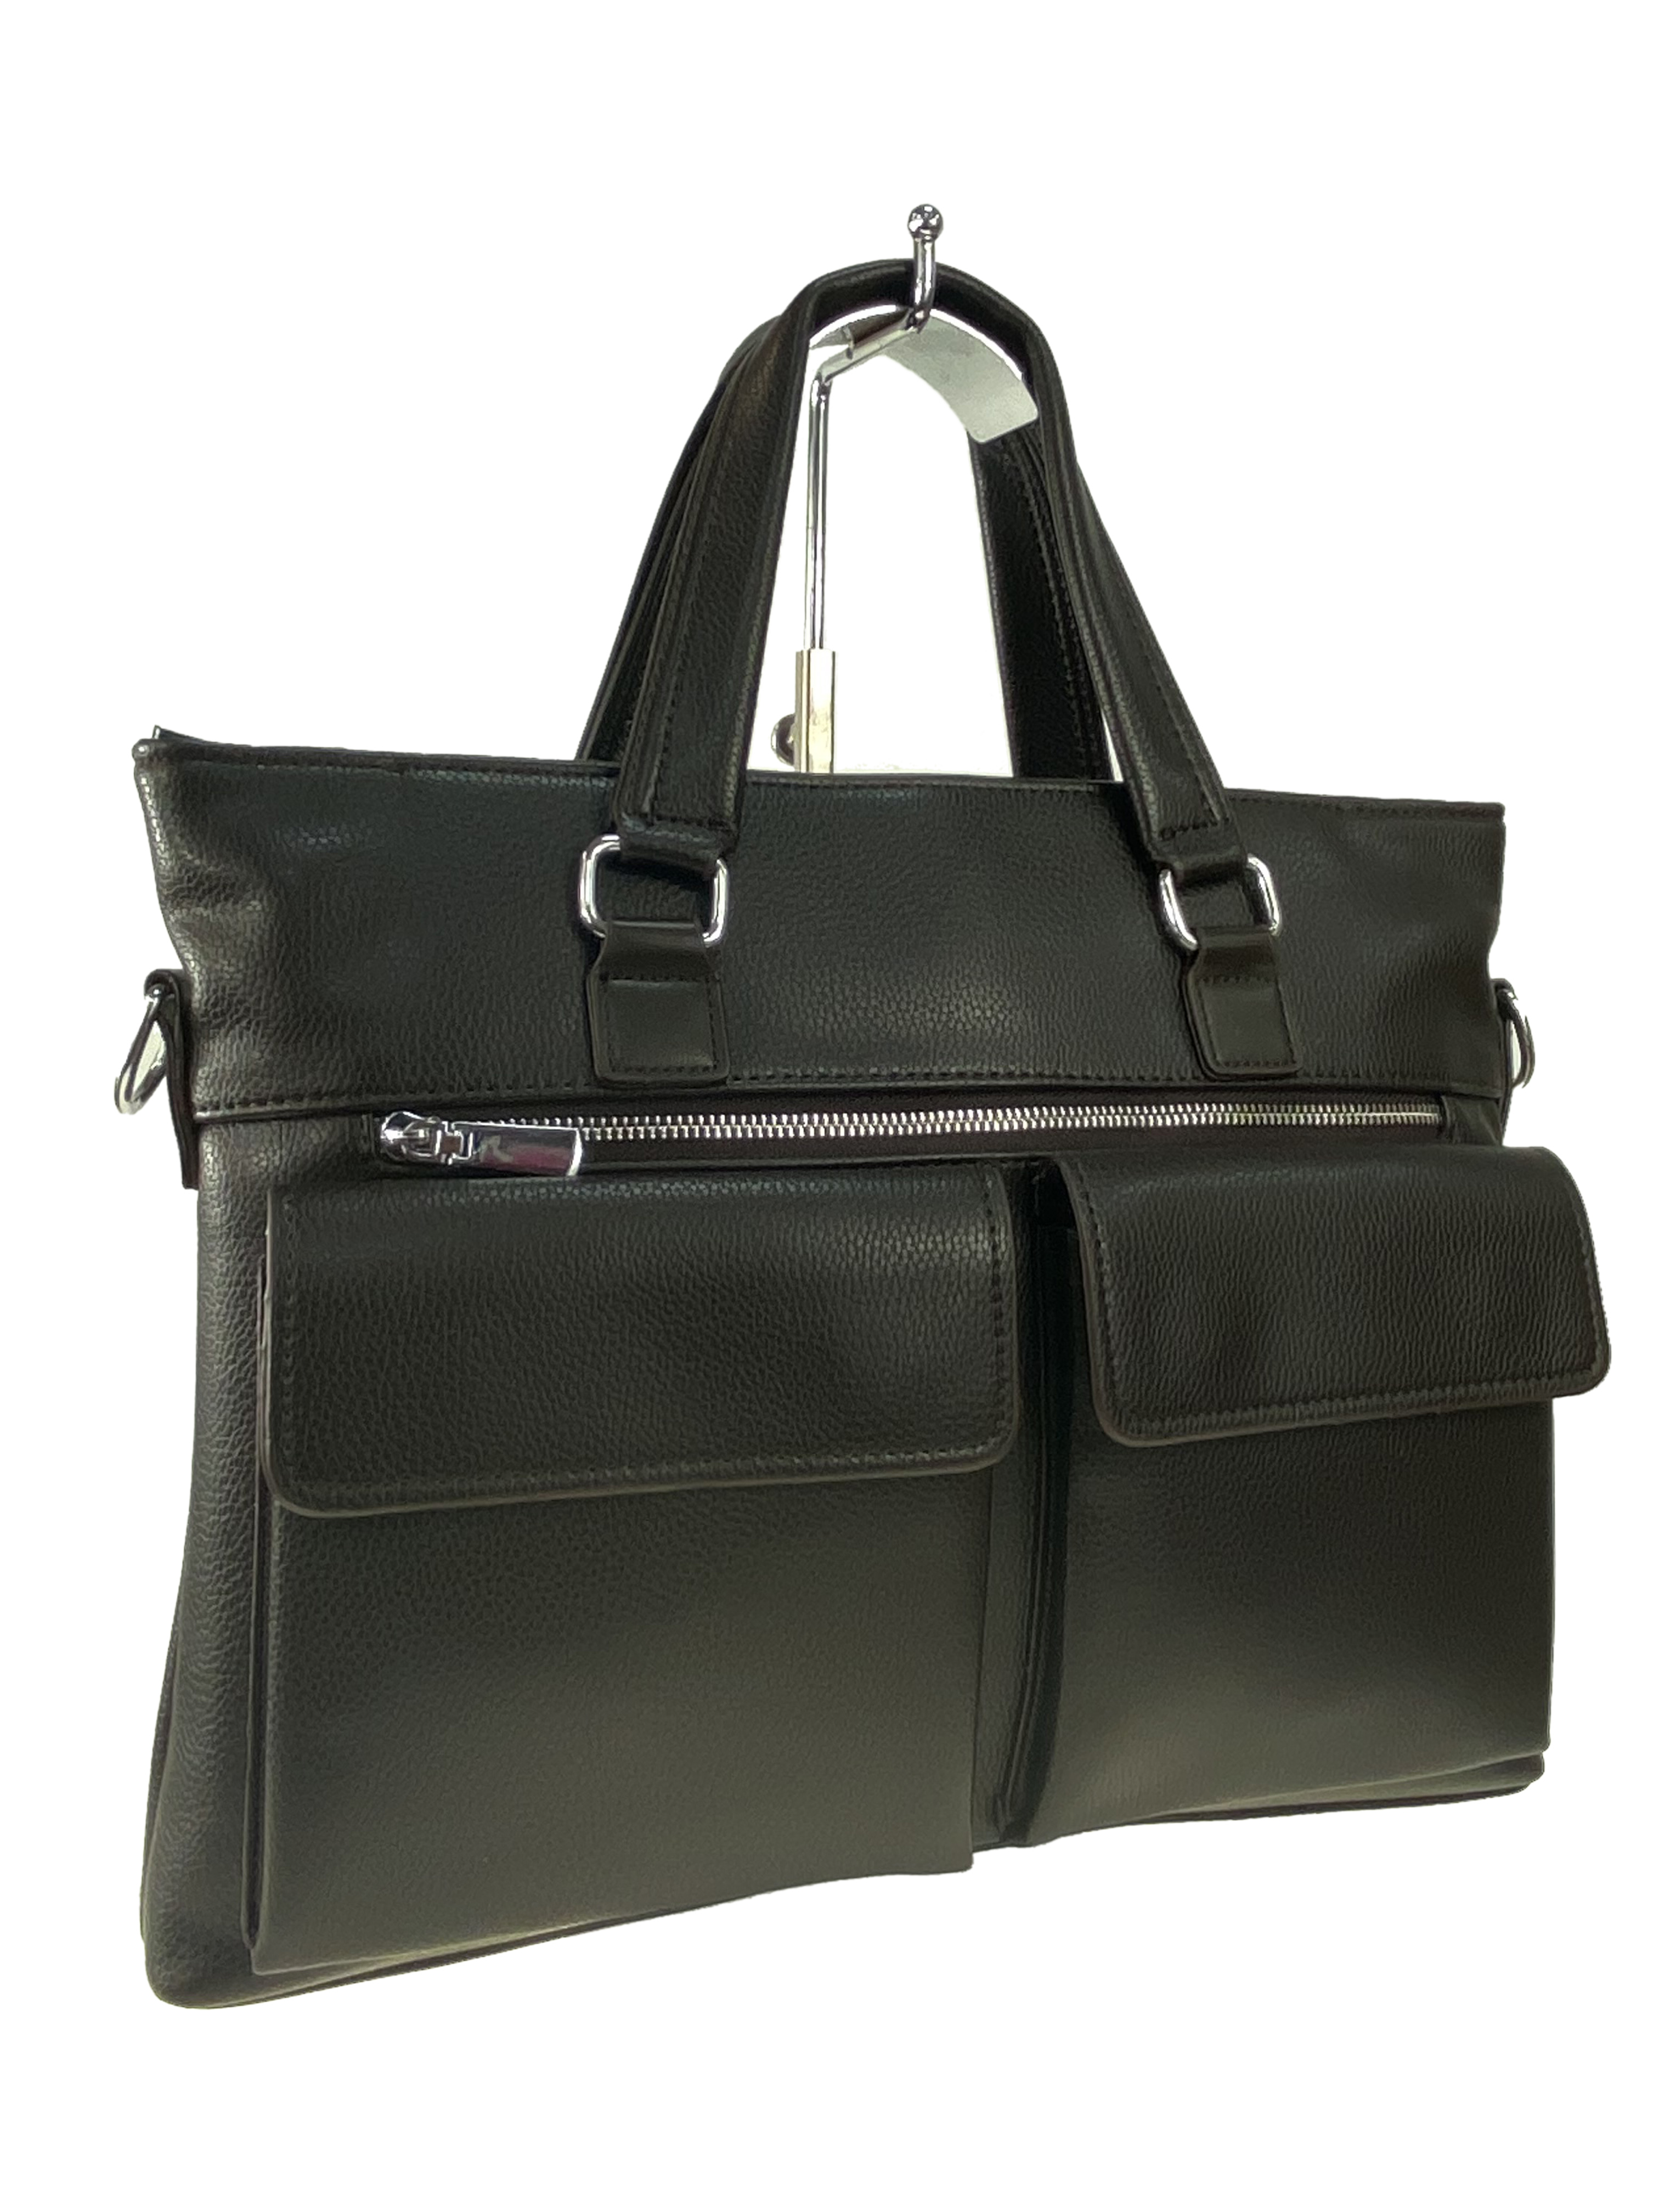 Мужская сумка-портфель из искусственной кожи, цвет коричневый